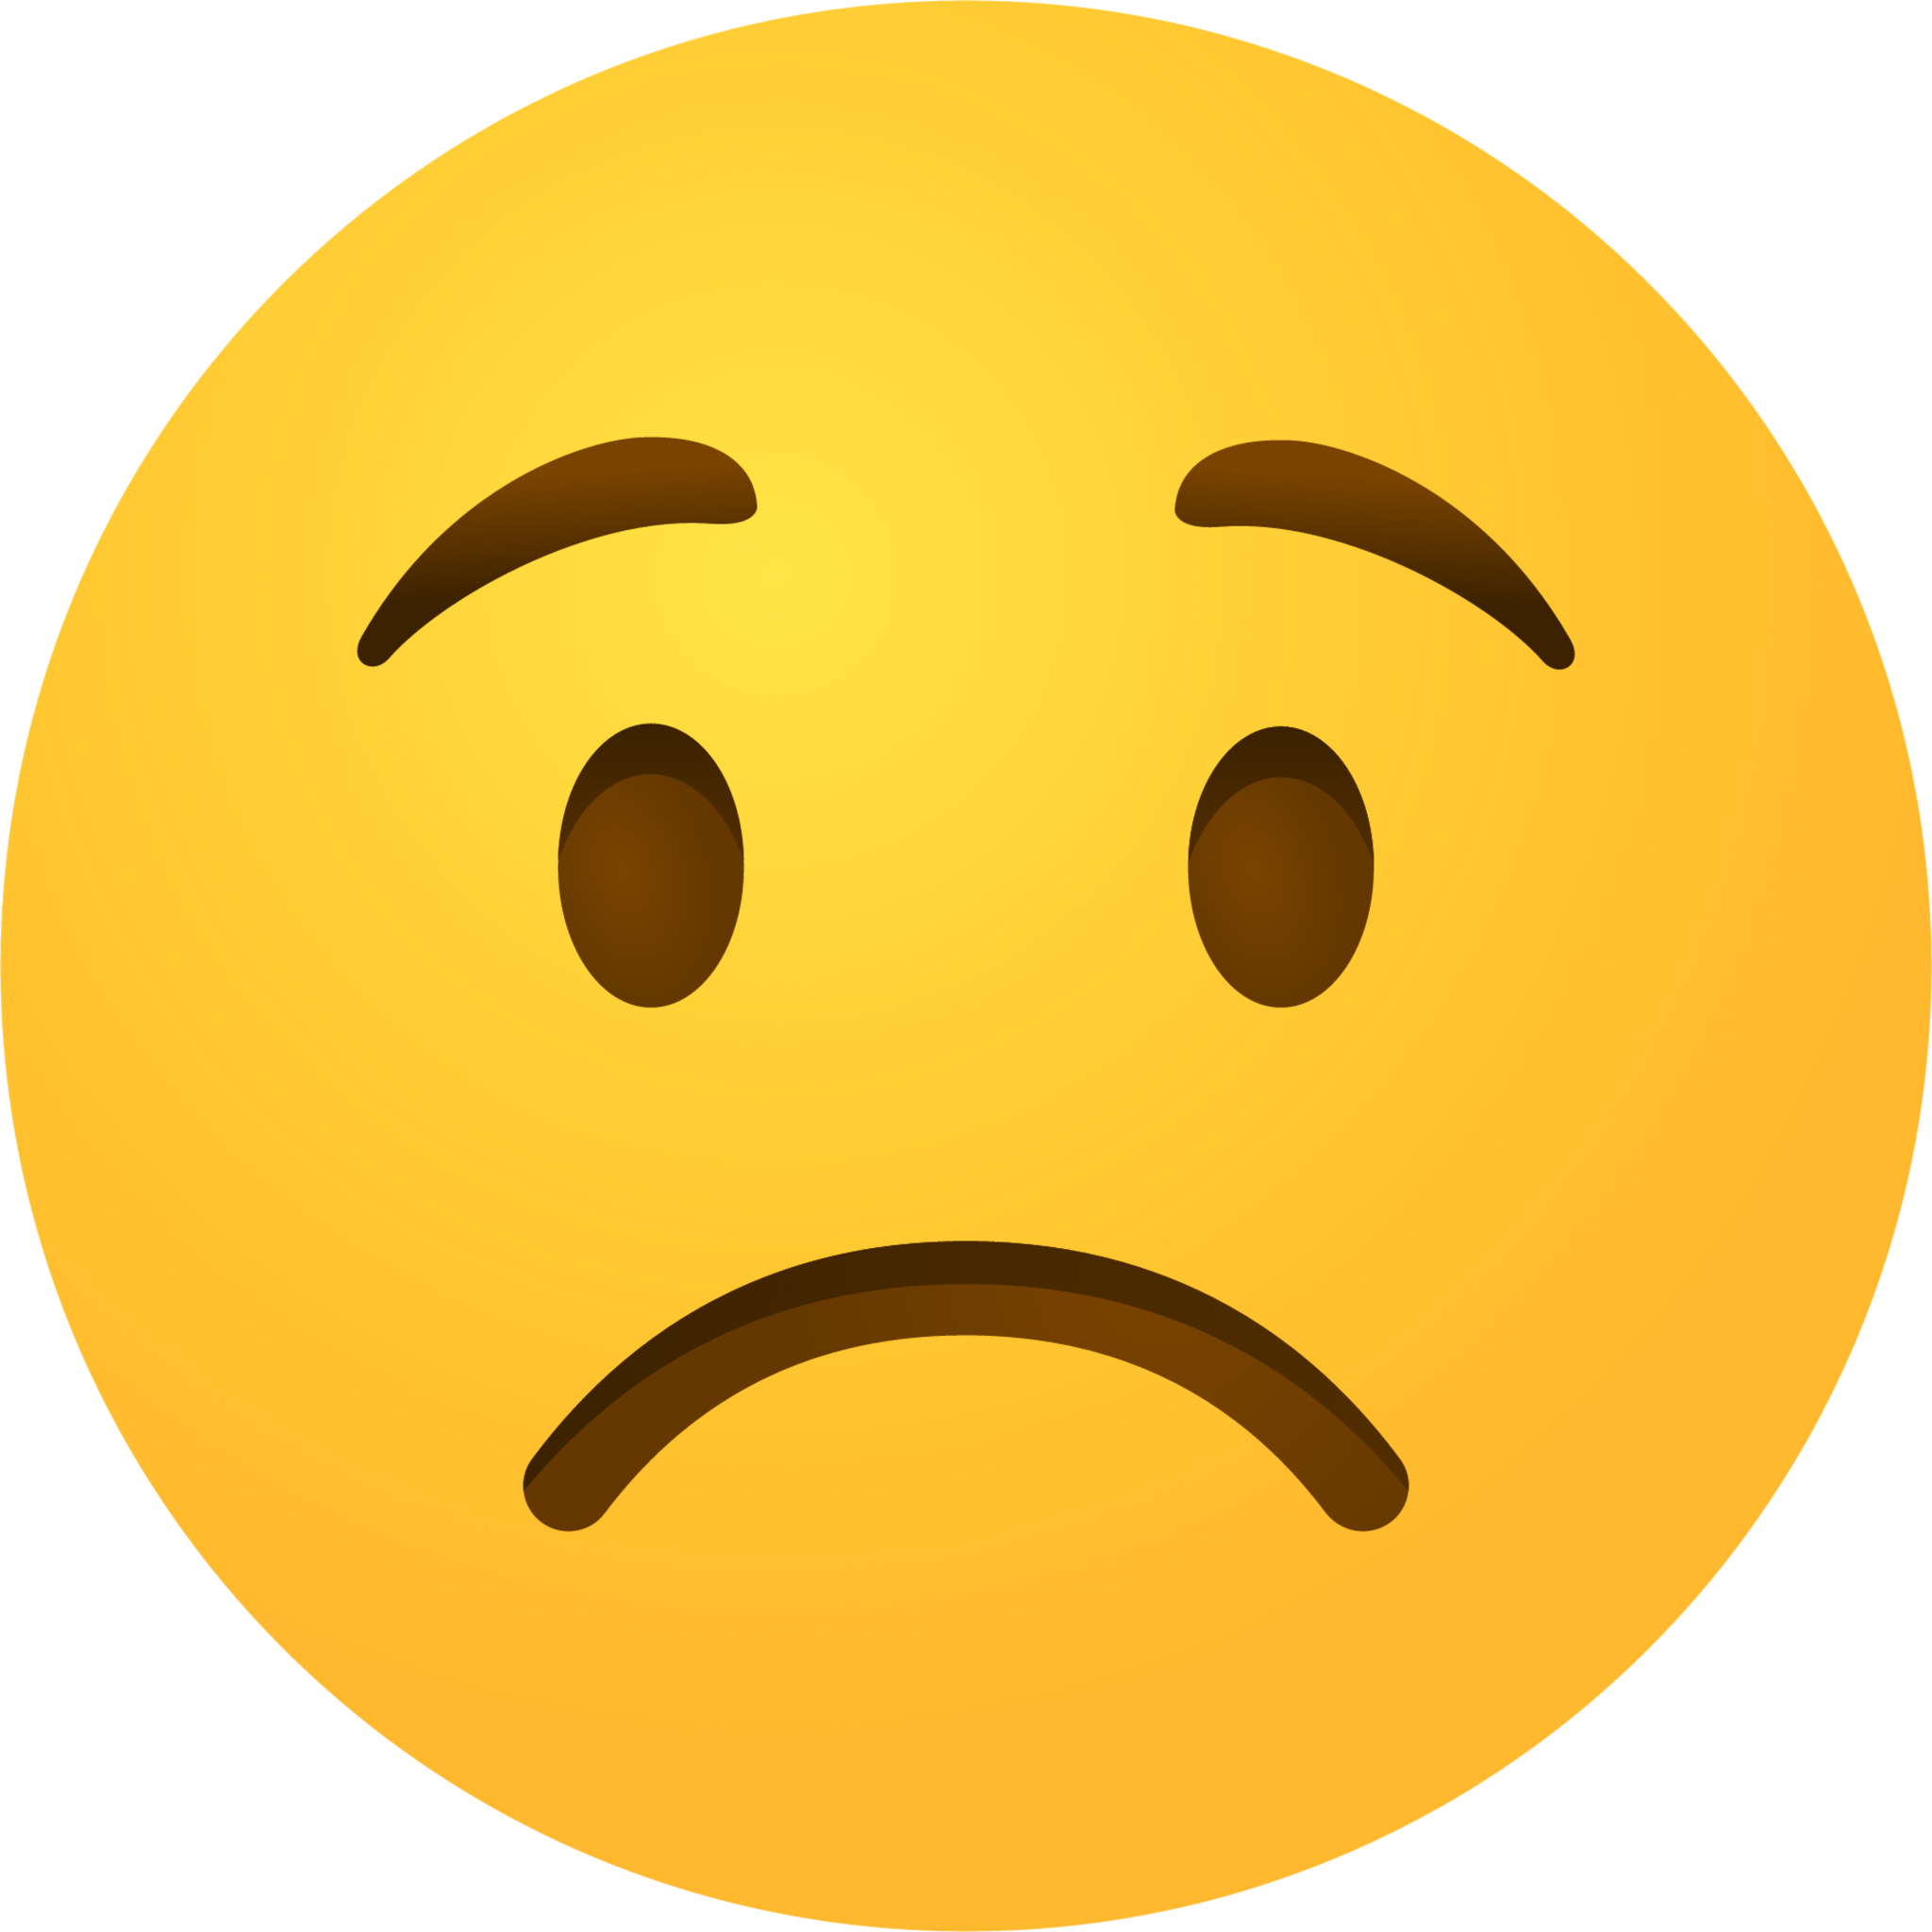 Frowning face emoji emoji